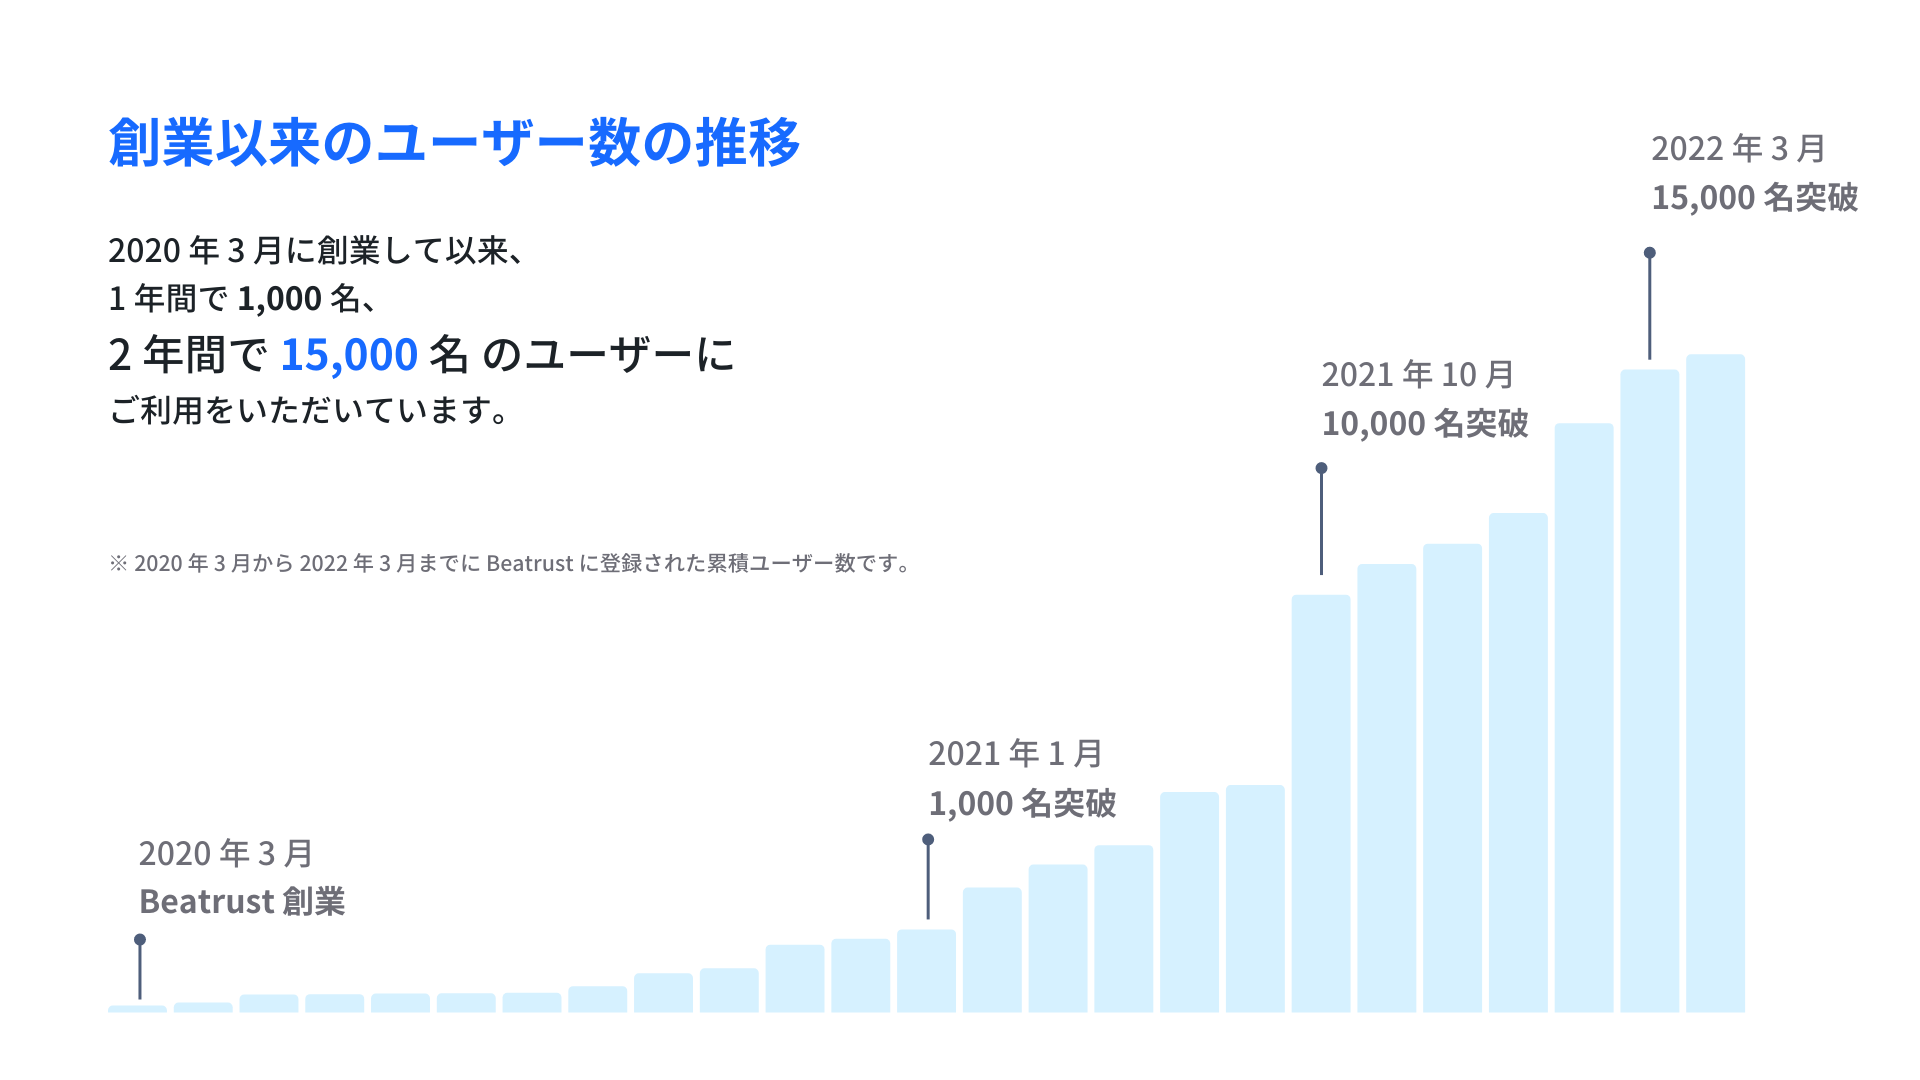 2020 年 3 月以来のユーザー数の推移